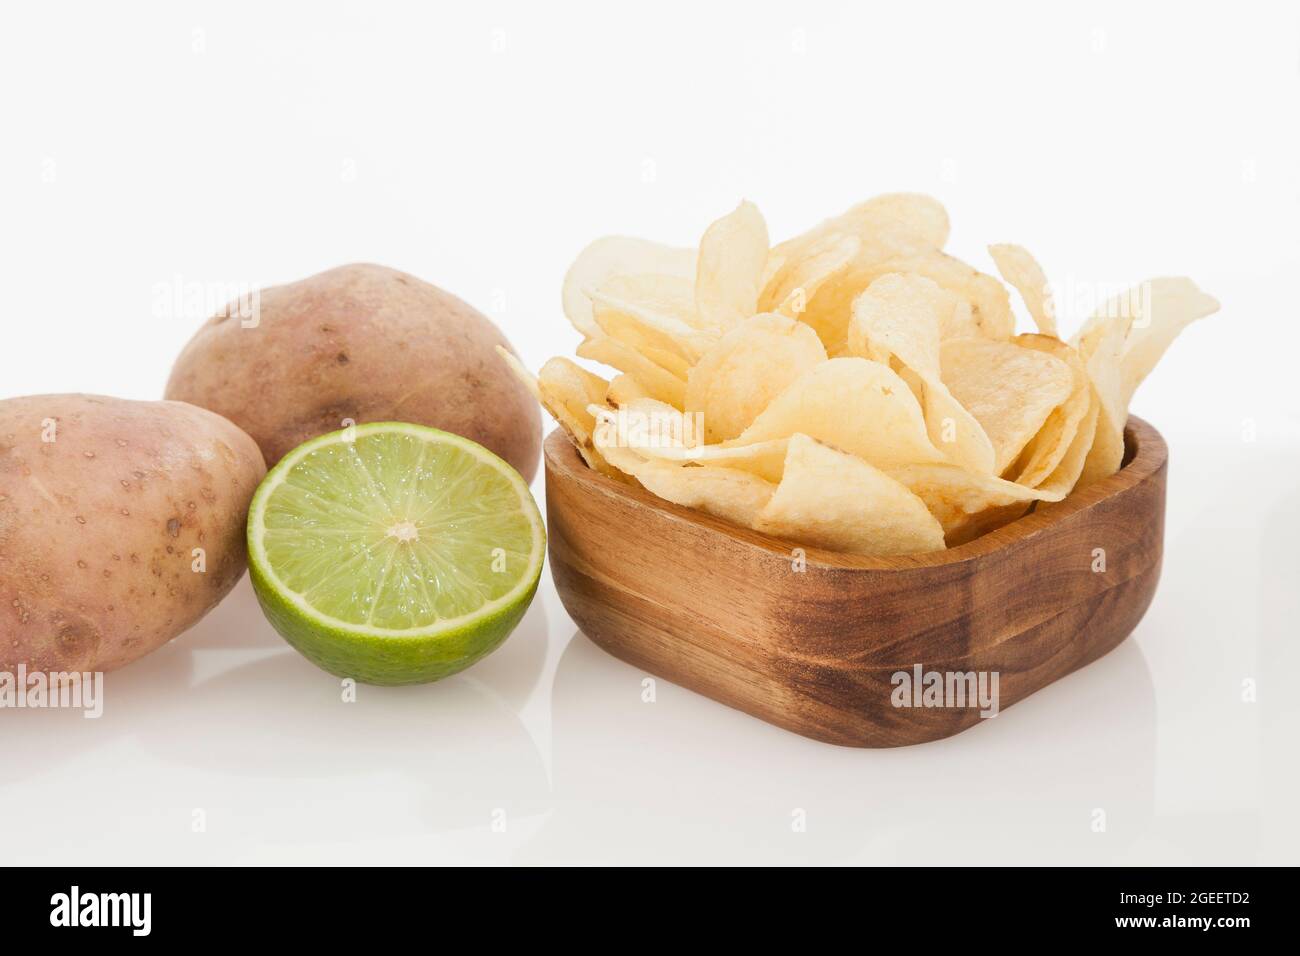 Holzschüssel Mit Leckeren Kartoffelchips Zitronengeschmack; Foto Auf Weißem Hintergrund Stockfoto